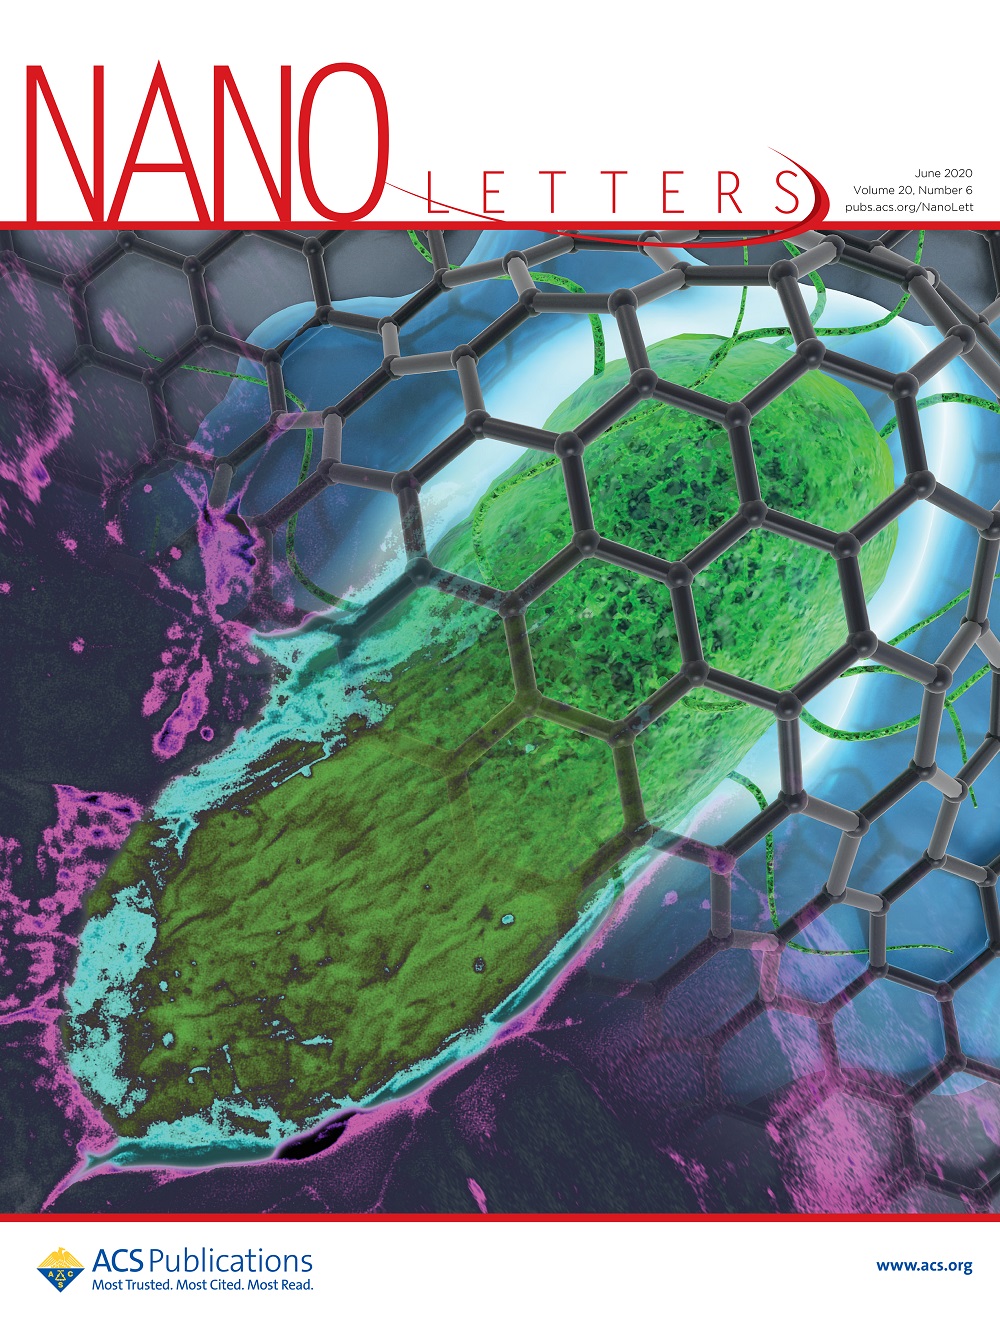 그림 4. Nano Letters 6월호 표지 이미지